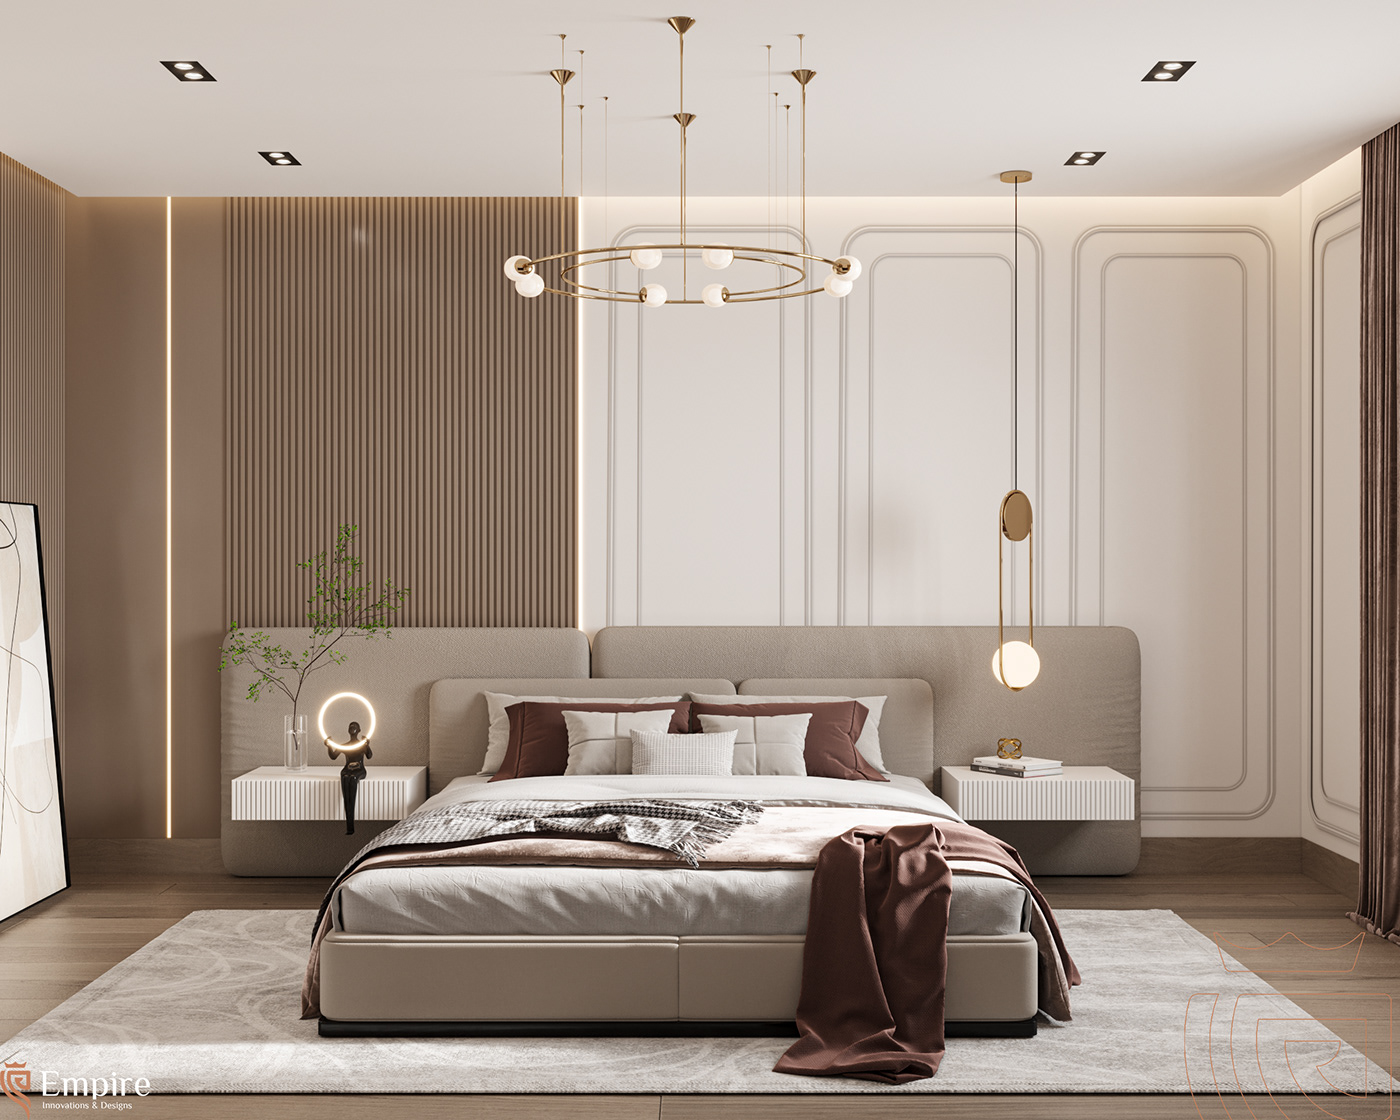 3ds max corona interior design  master bedroom